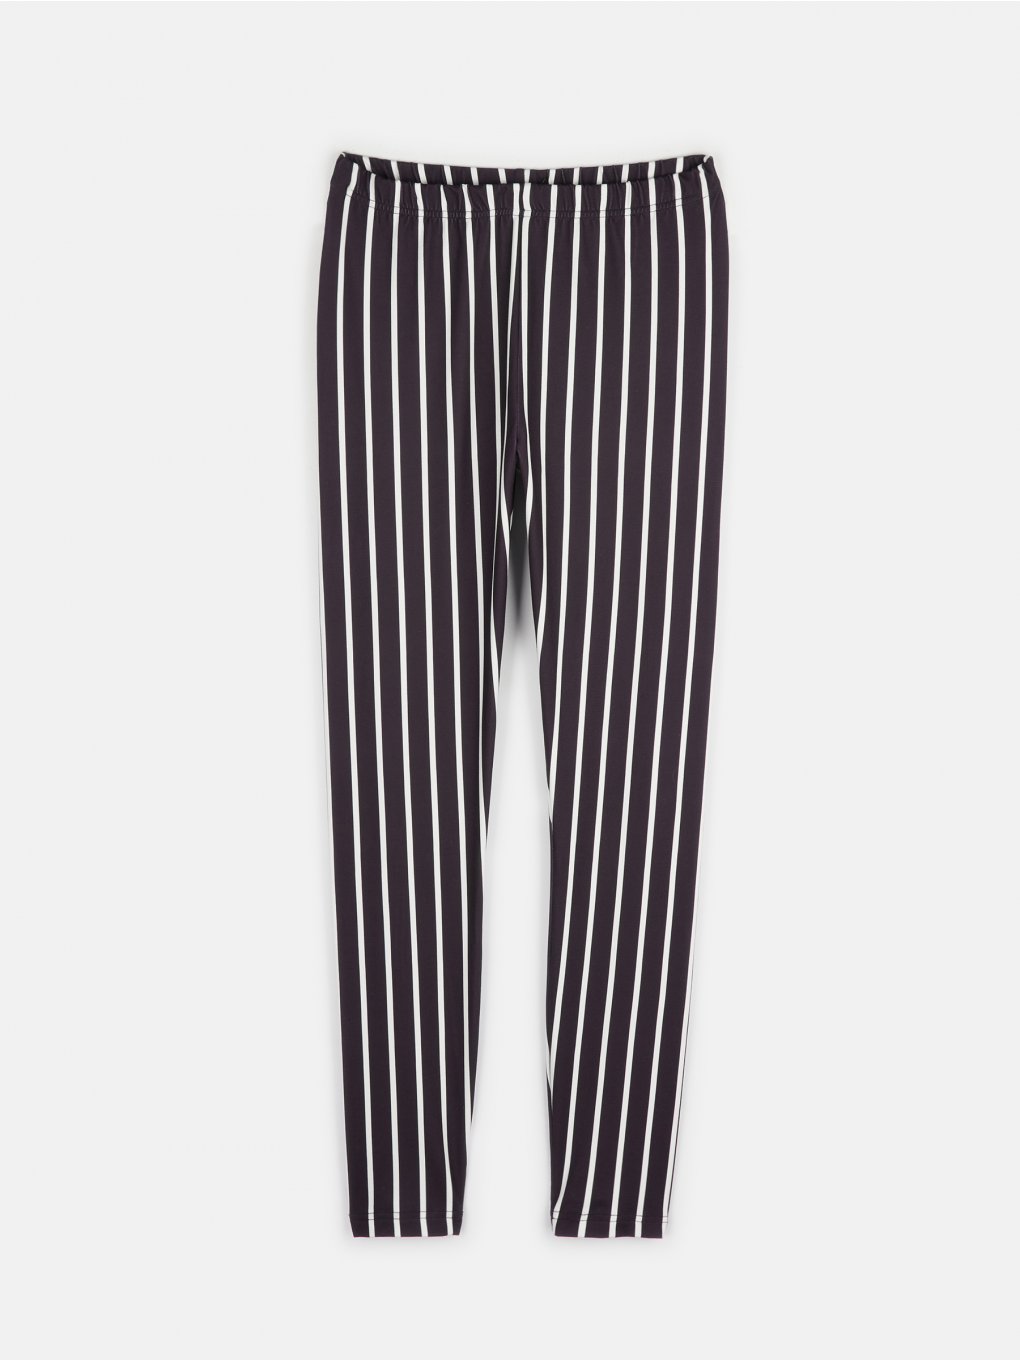 Striped leggings